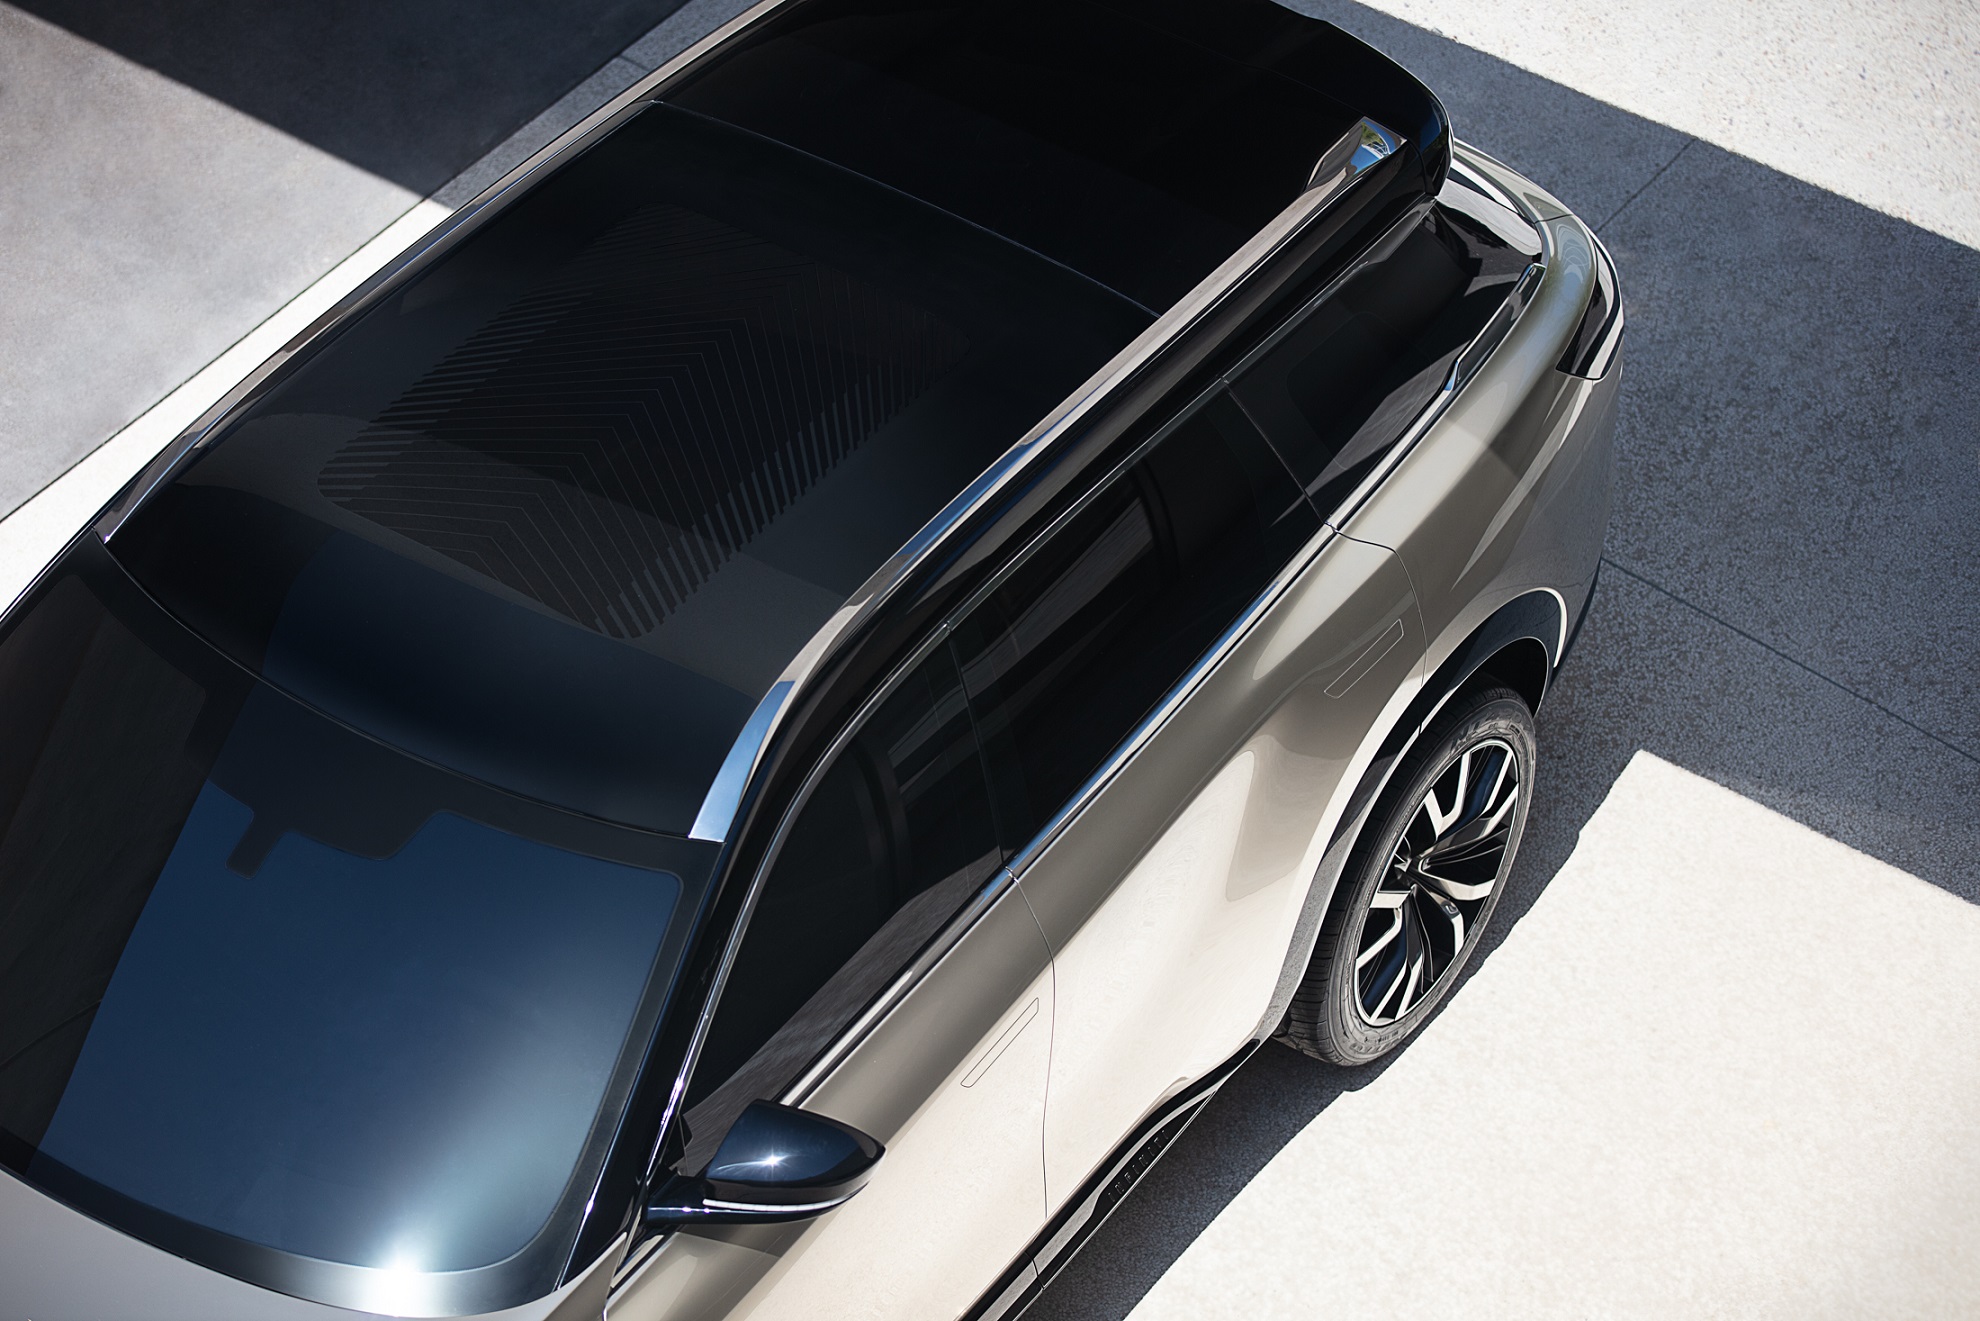 إنفينيتي تستعد للكشف عن تصميم الجيل القادم من سيارات QX60 مونوغراف متعددة الاستخدامات ذات صفوف المقاعد الثلاثة